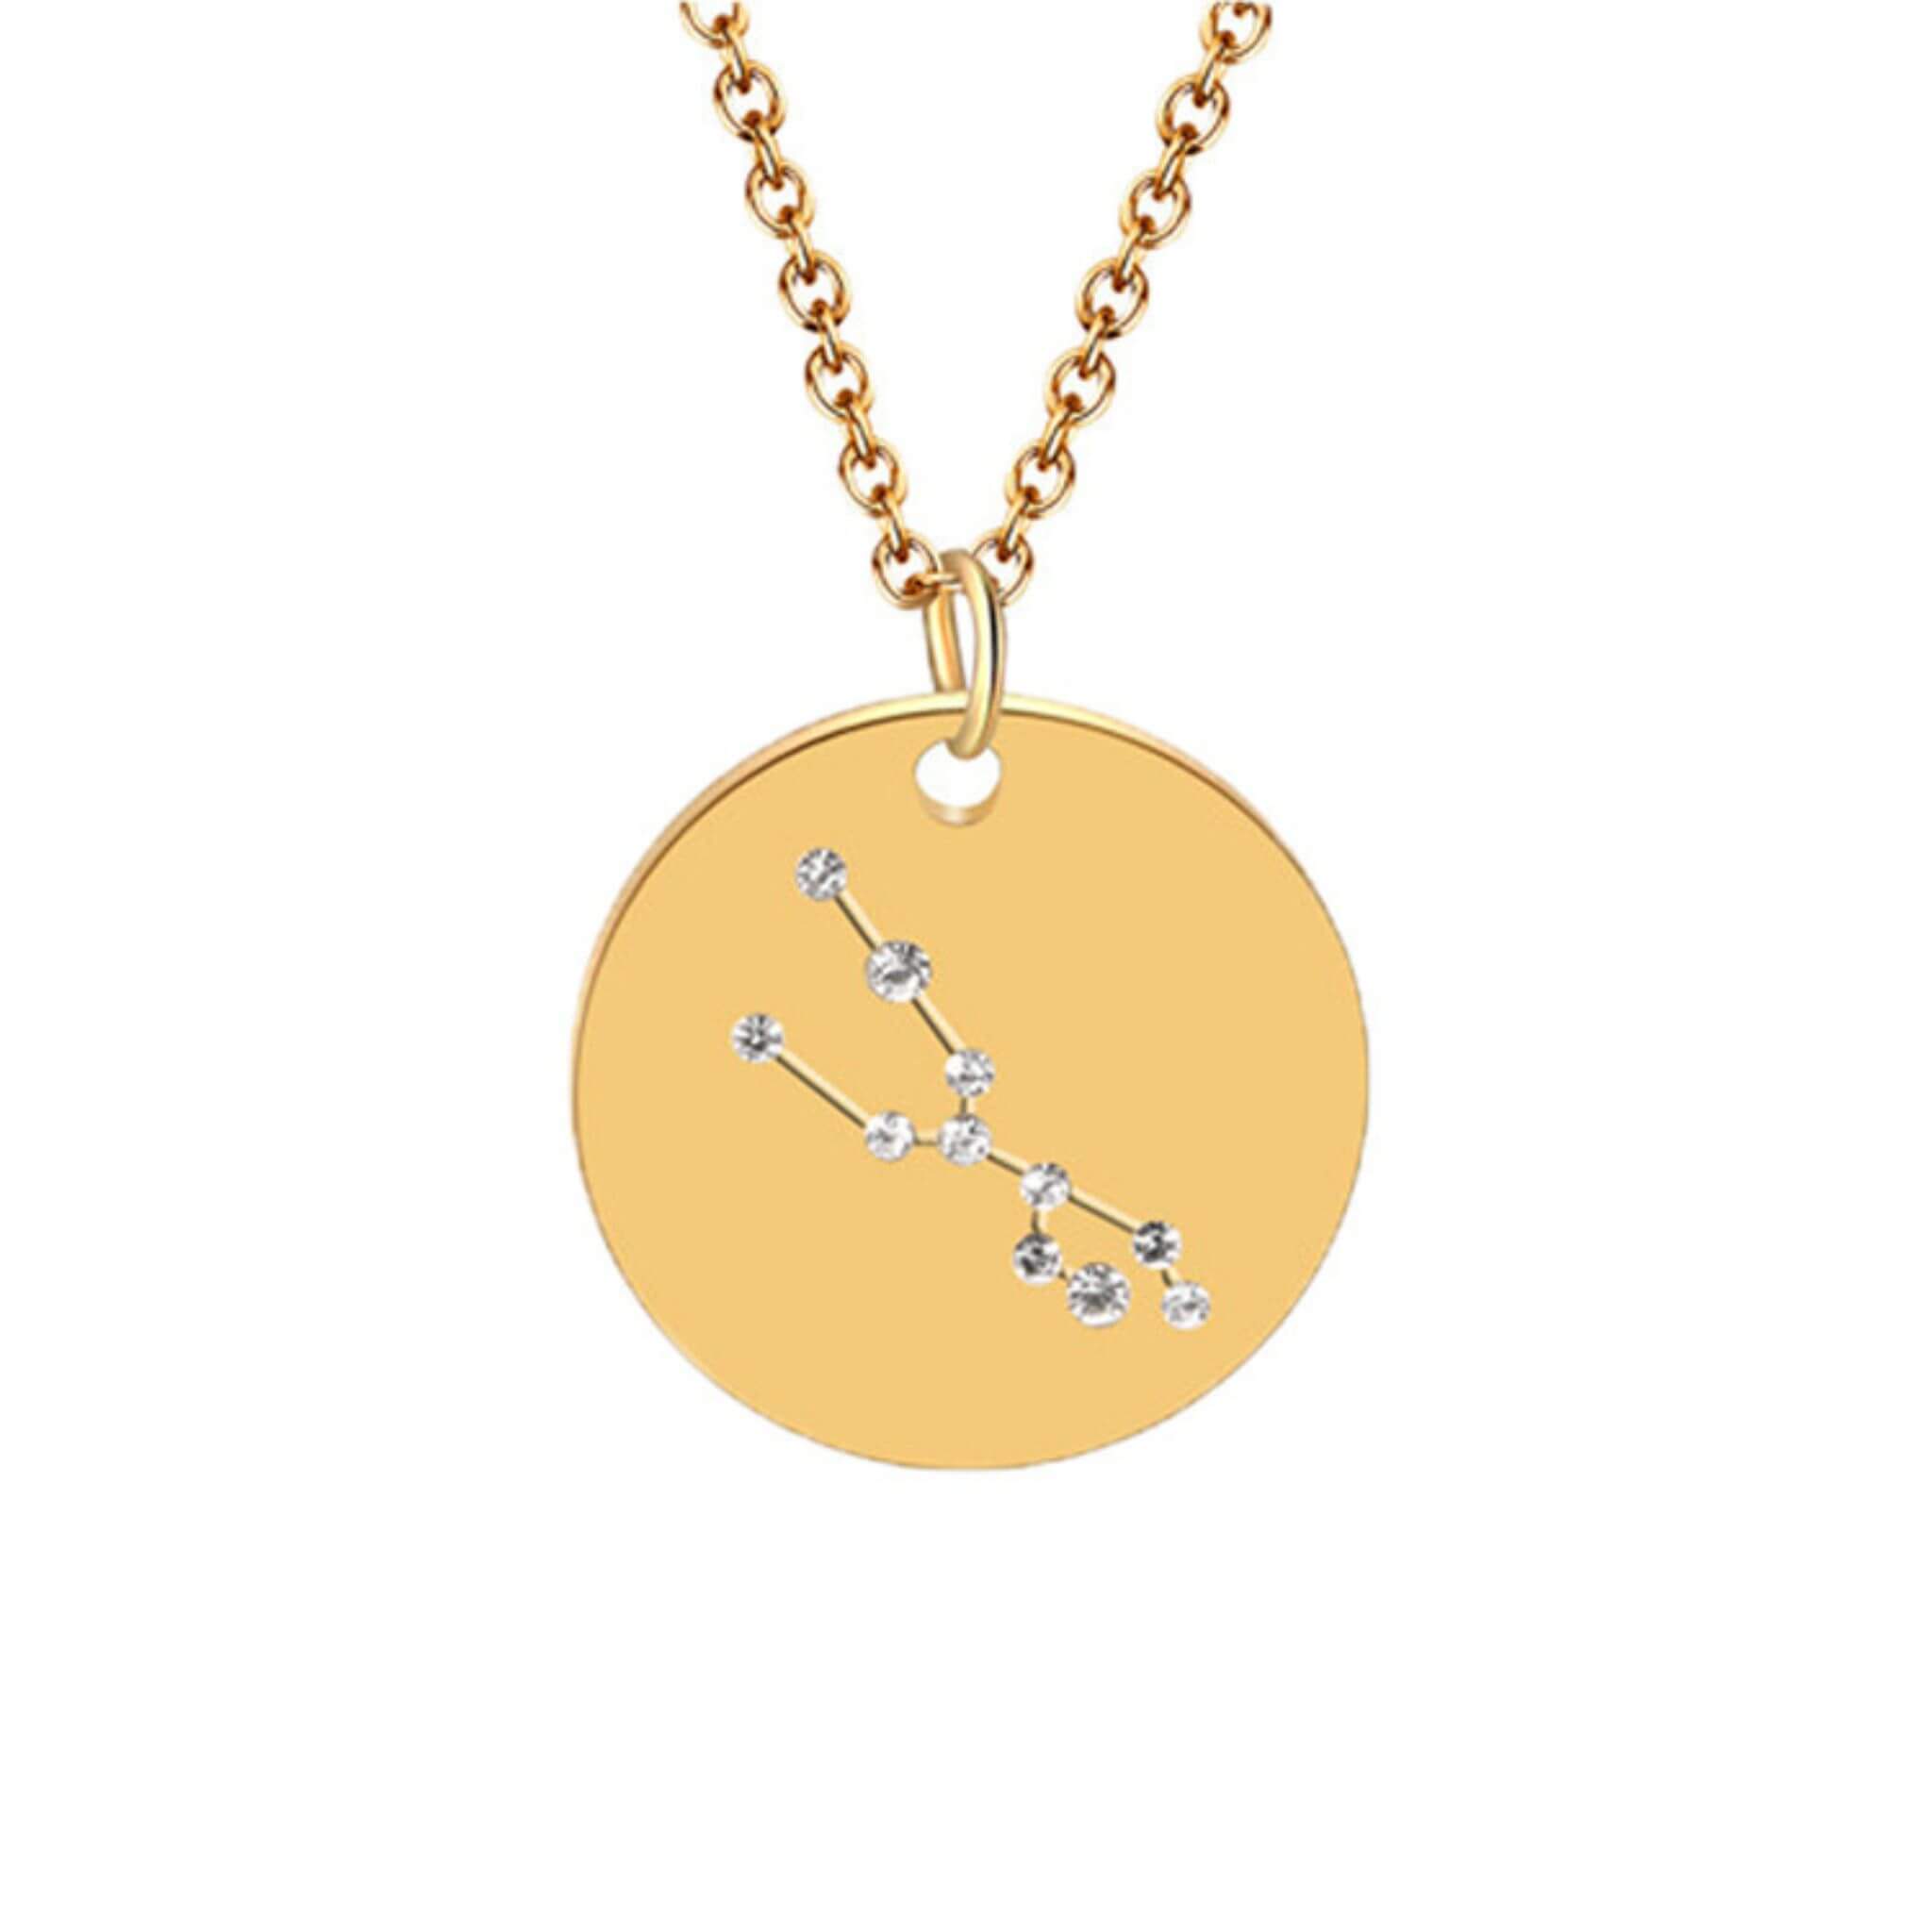 Taurus Constellation Necklace 